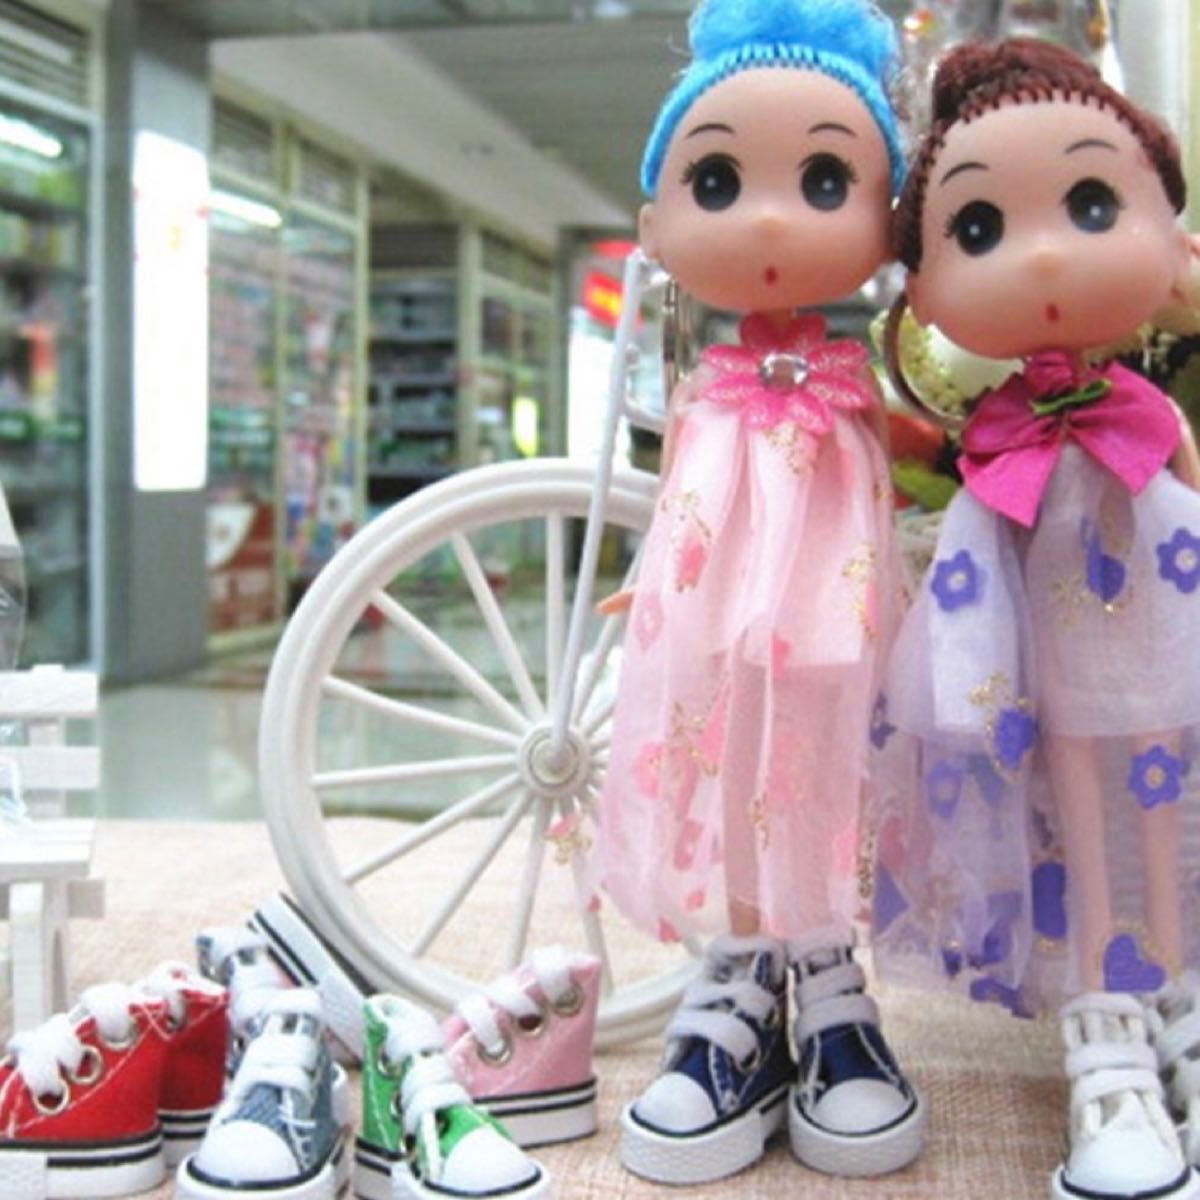 ドールシューズ 3.8cm 人形用シューズ ドール ミニチュア 人形用くつ 赤 スニーカー  人形用グッズ 靴